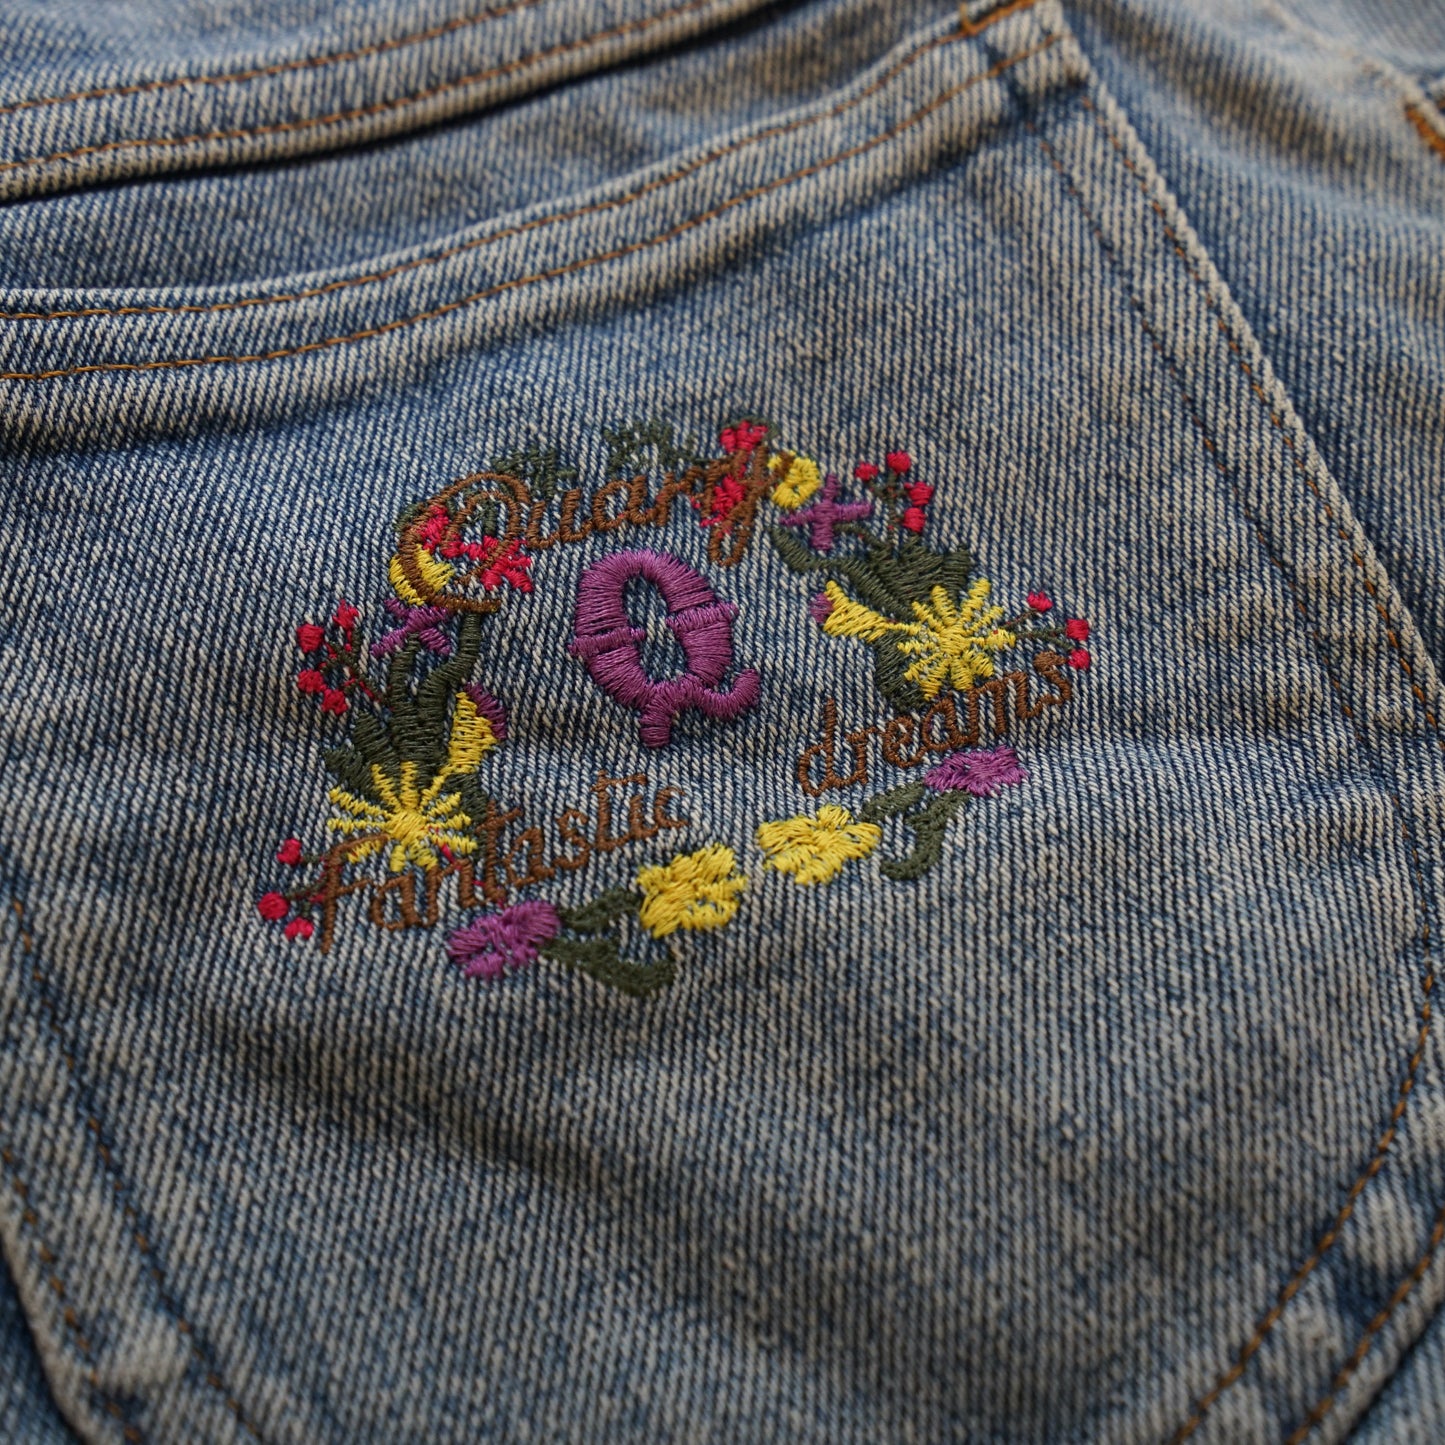 Vintage embroidered denim Shorts Size S